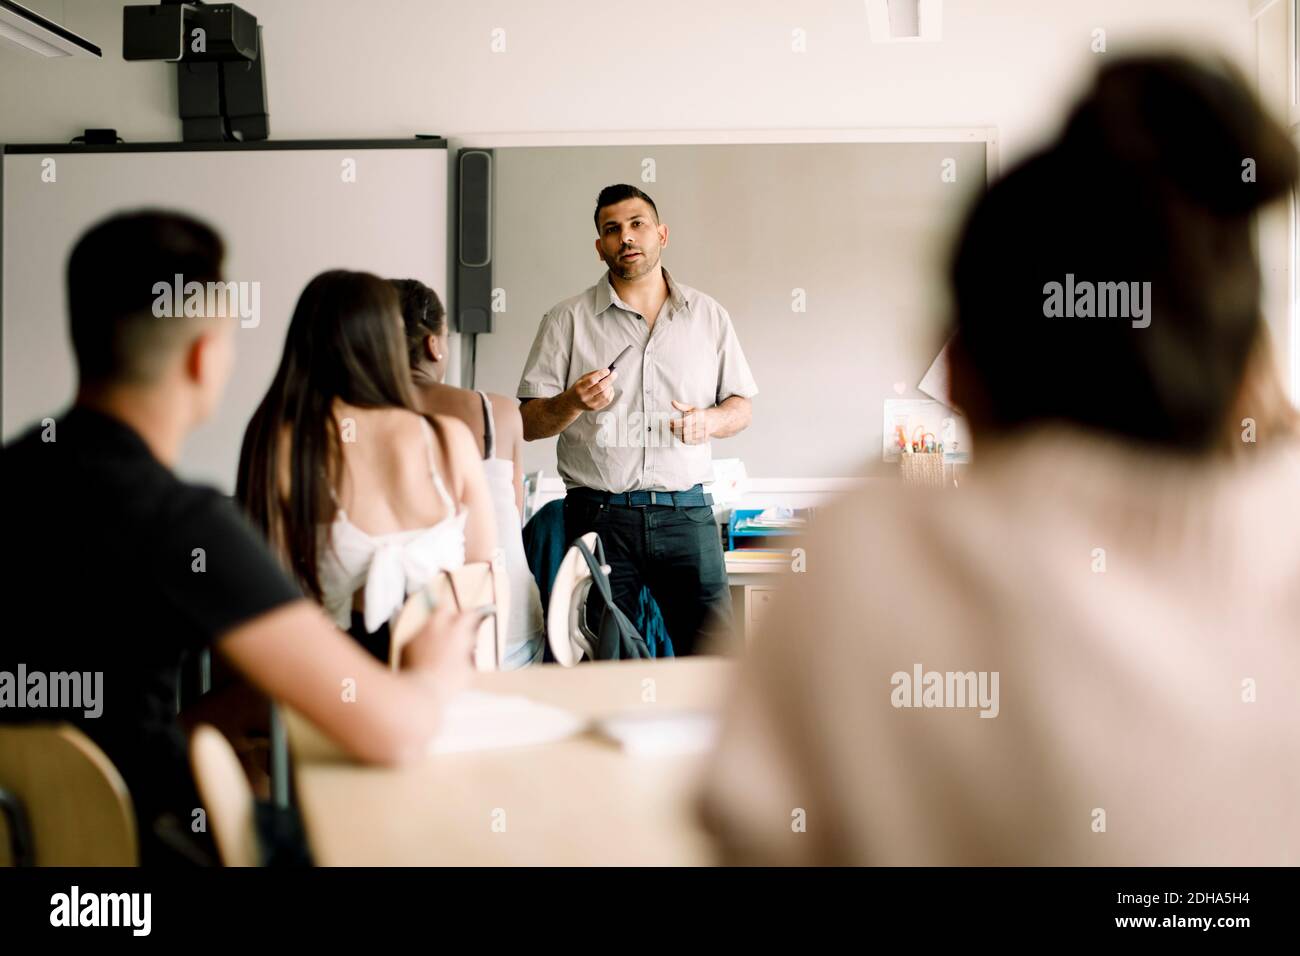 Professeur enseignant pendant que les étudiants adolescents sont assis en classe Banque D'Images